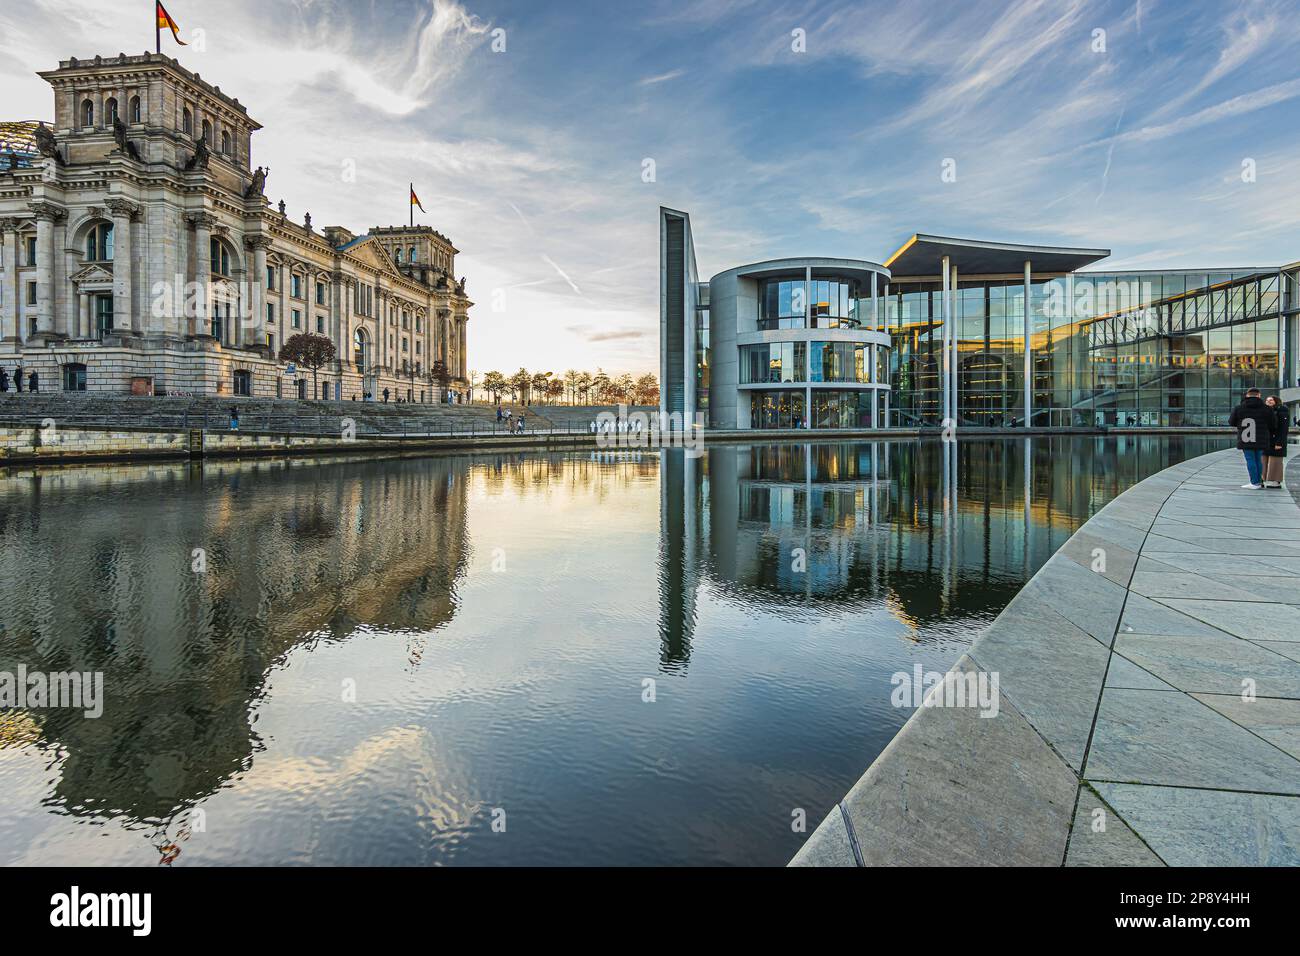 Spree in Berlin an einem Wintertag. Reichstag und Regierungsgebäude in der Hauptstadt Deutschlands. Reflexion auf der Wasseroberfläche der Spree Stockfoto